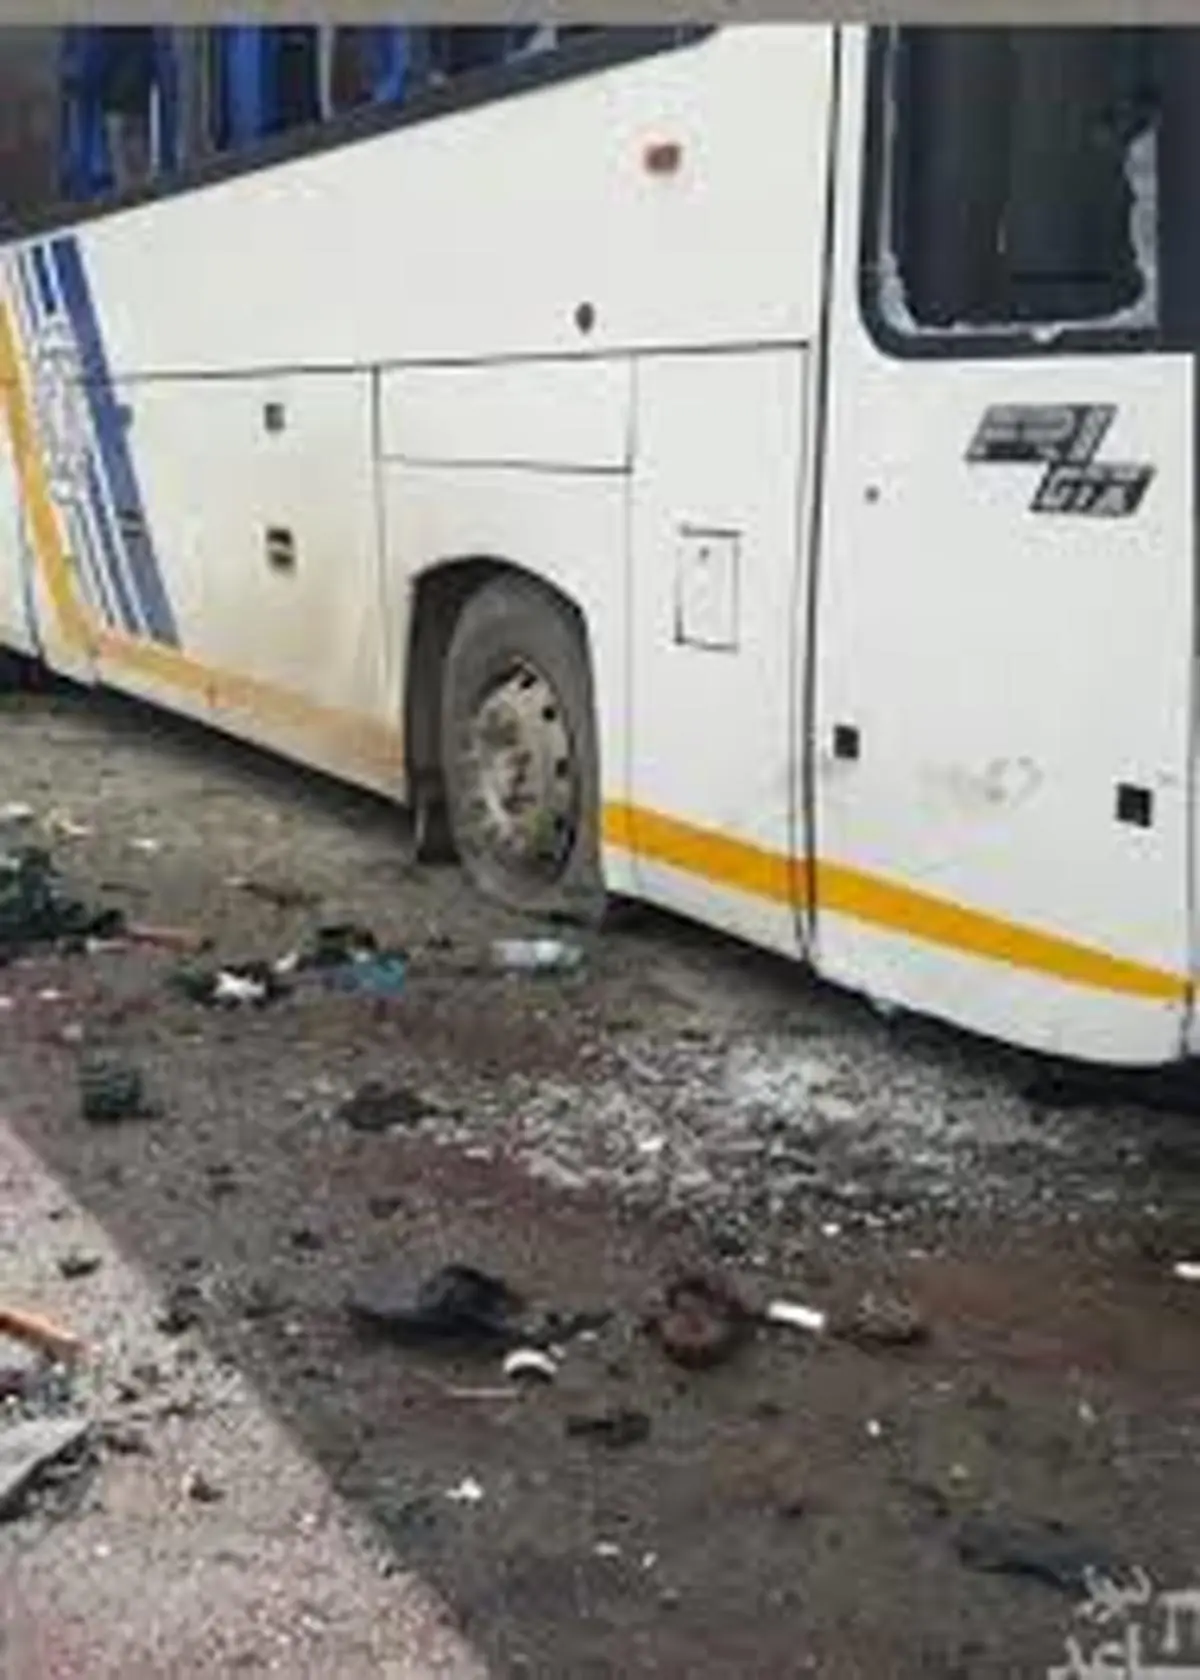 تصادف شدید و هولناک با اتوبوس در خیابان+ویدئو